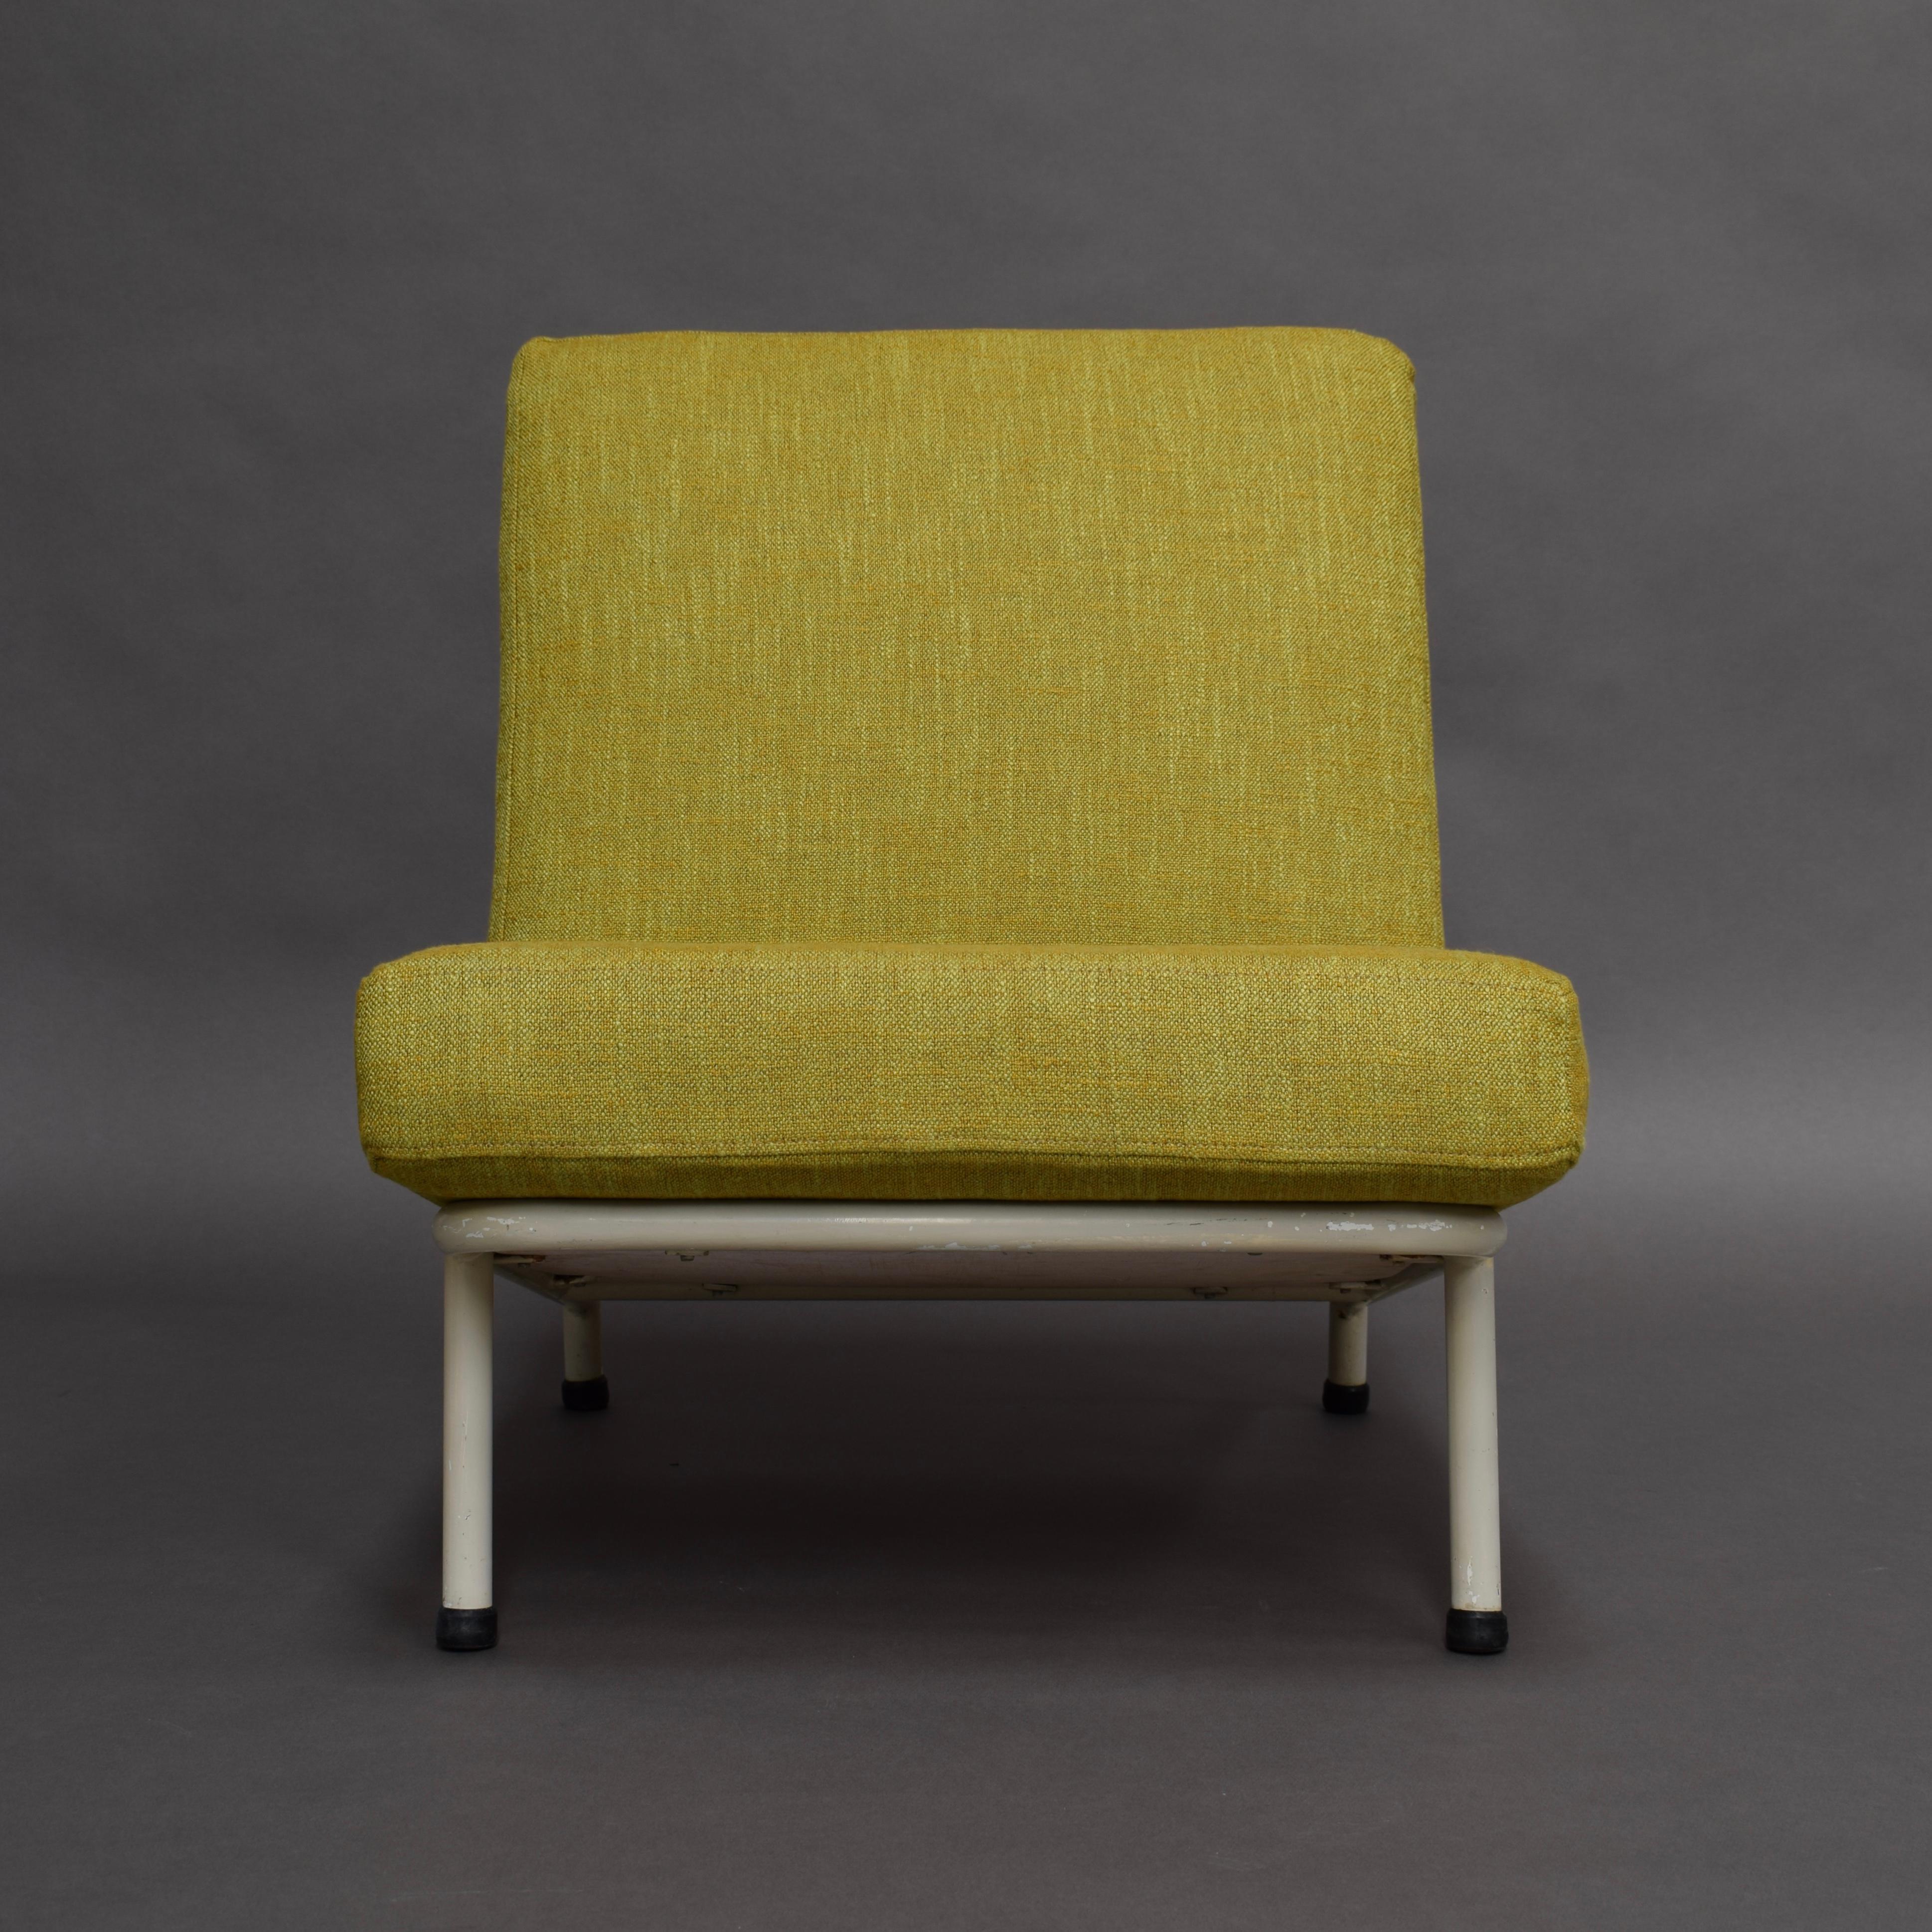 Minimalistischer skandinavischer Loungesessel. Sauberes und einfaches schwedisches Design. 
Die Kissen wurden mit dem neuen Chivasso-Stoff aus der Kollektion 2020 neu gepolstert. Dieser Stuhl wurde für die Broschüre Chivasso 2020